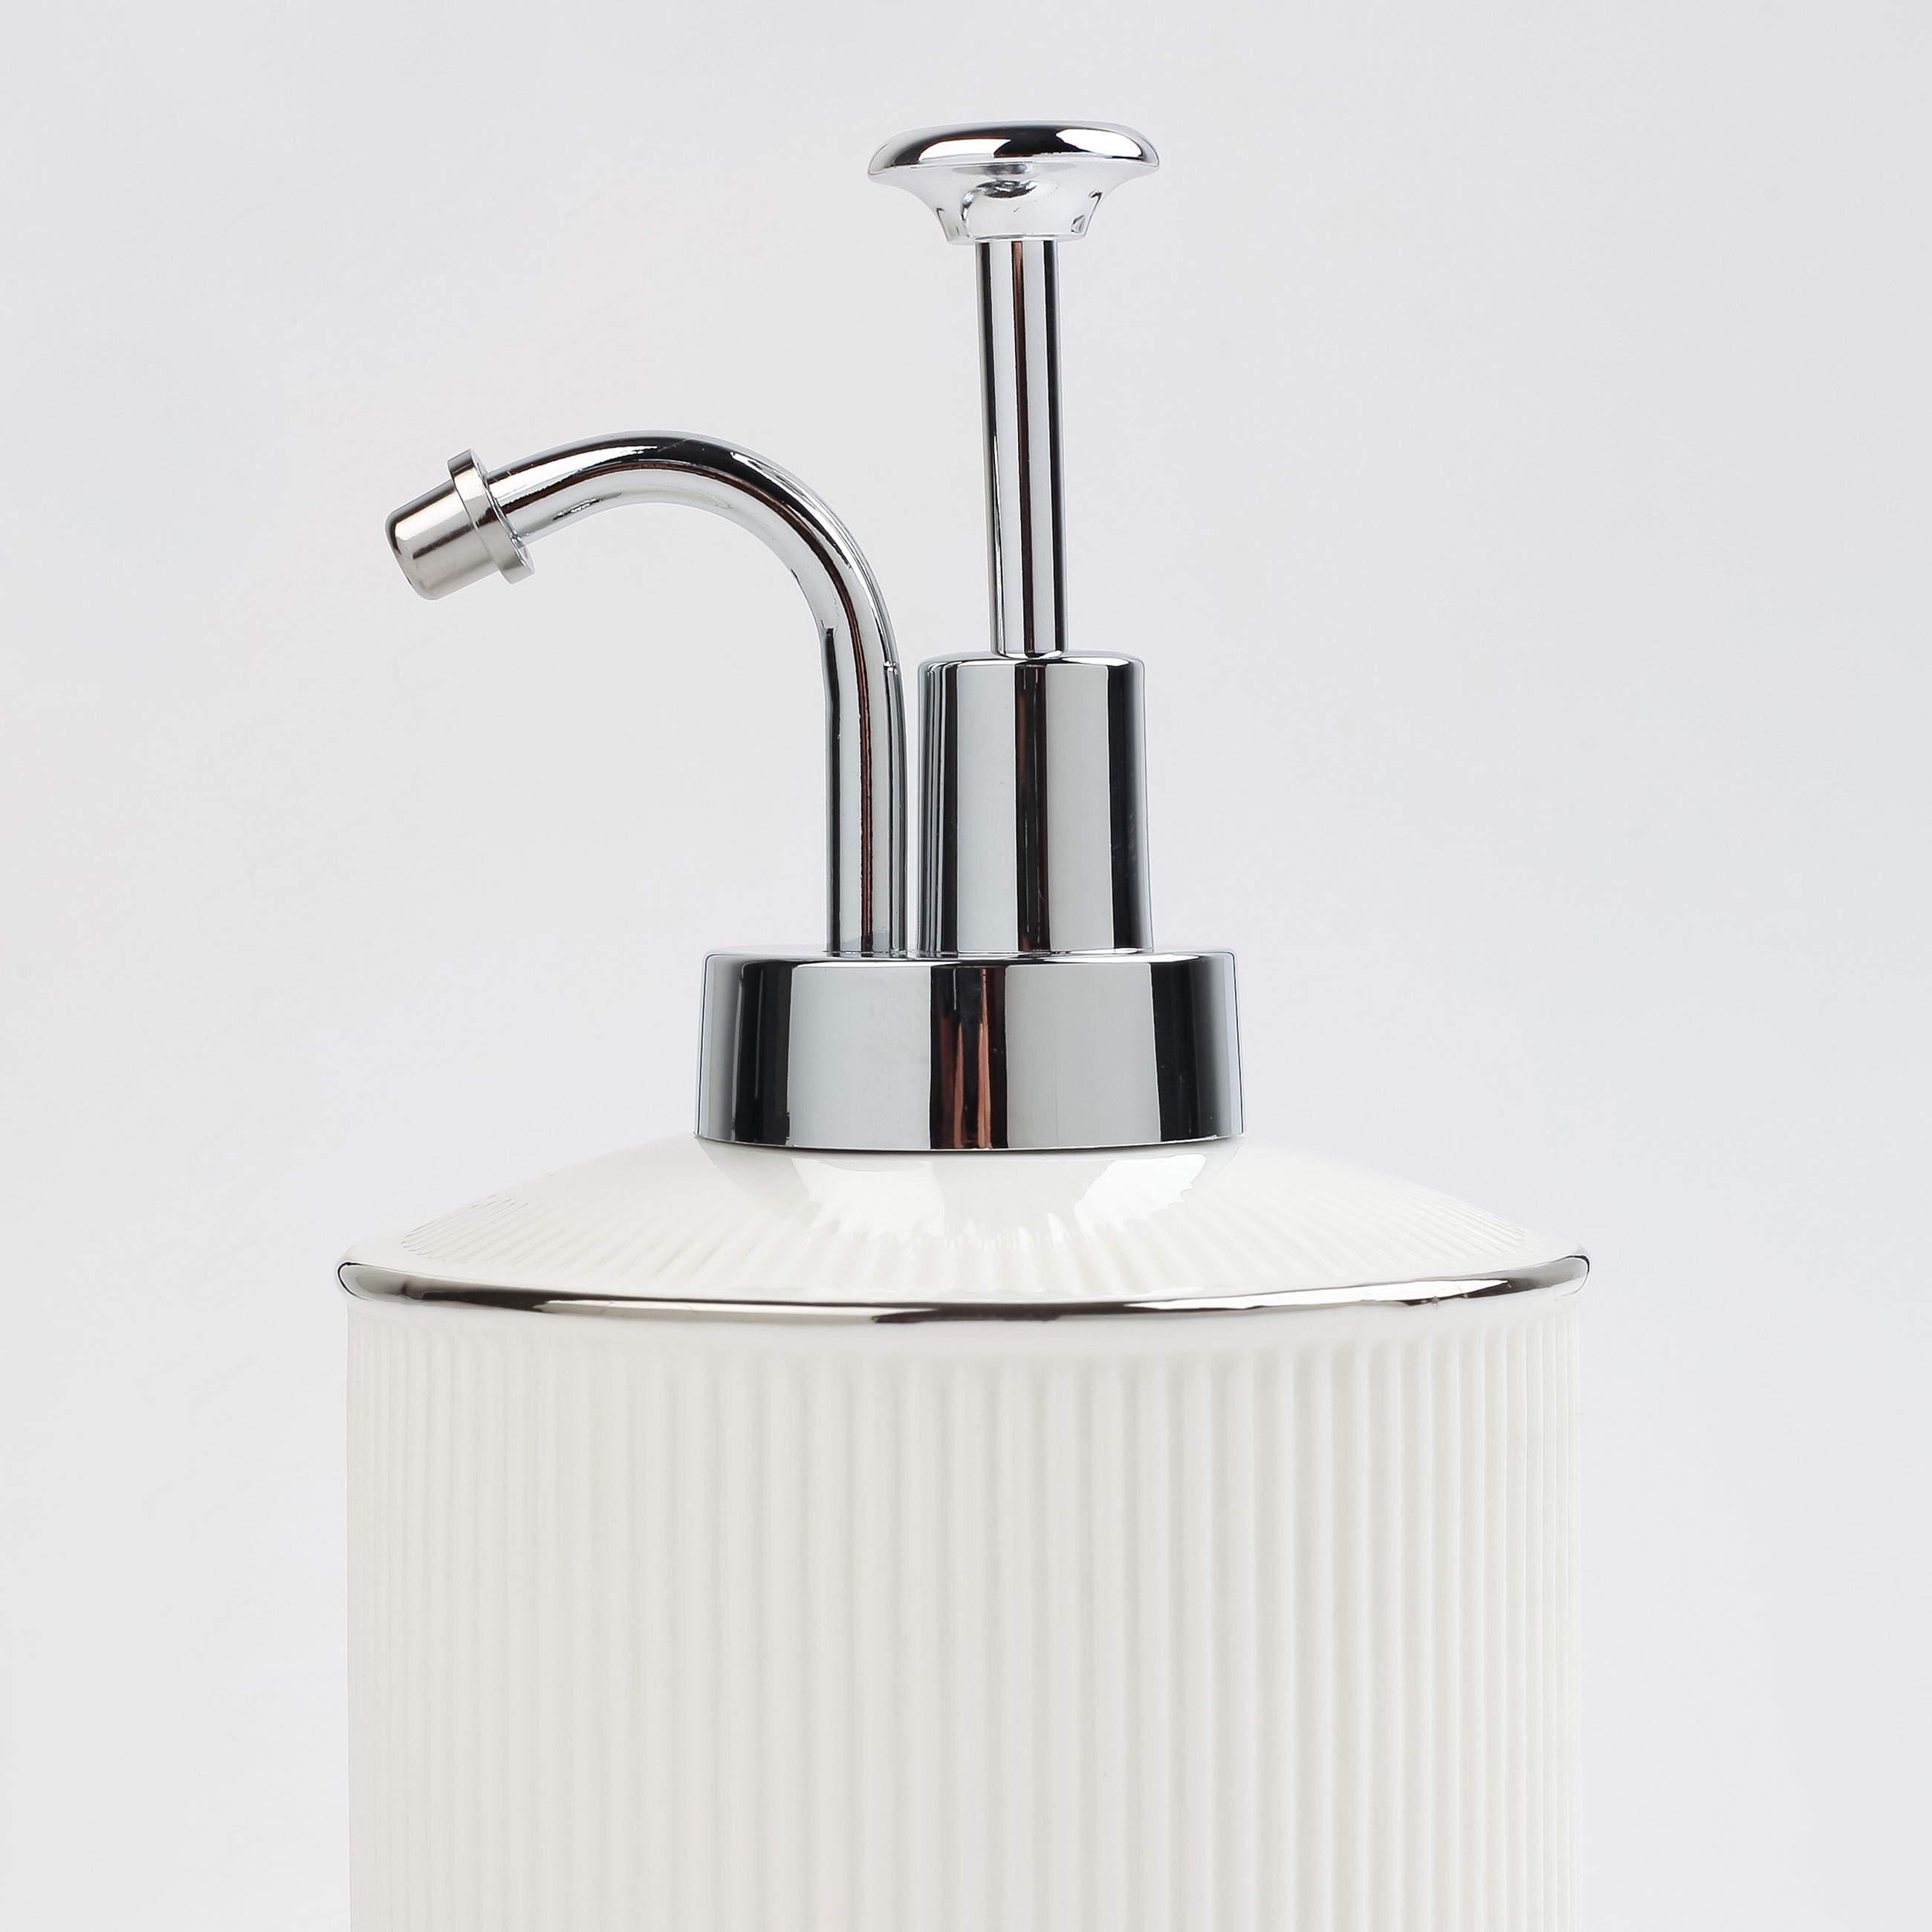 Liquid soap dispenser, 370 ml, ceramic / plastic, white, with silver edging, Kaliopa изображение № 3